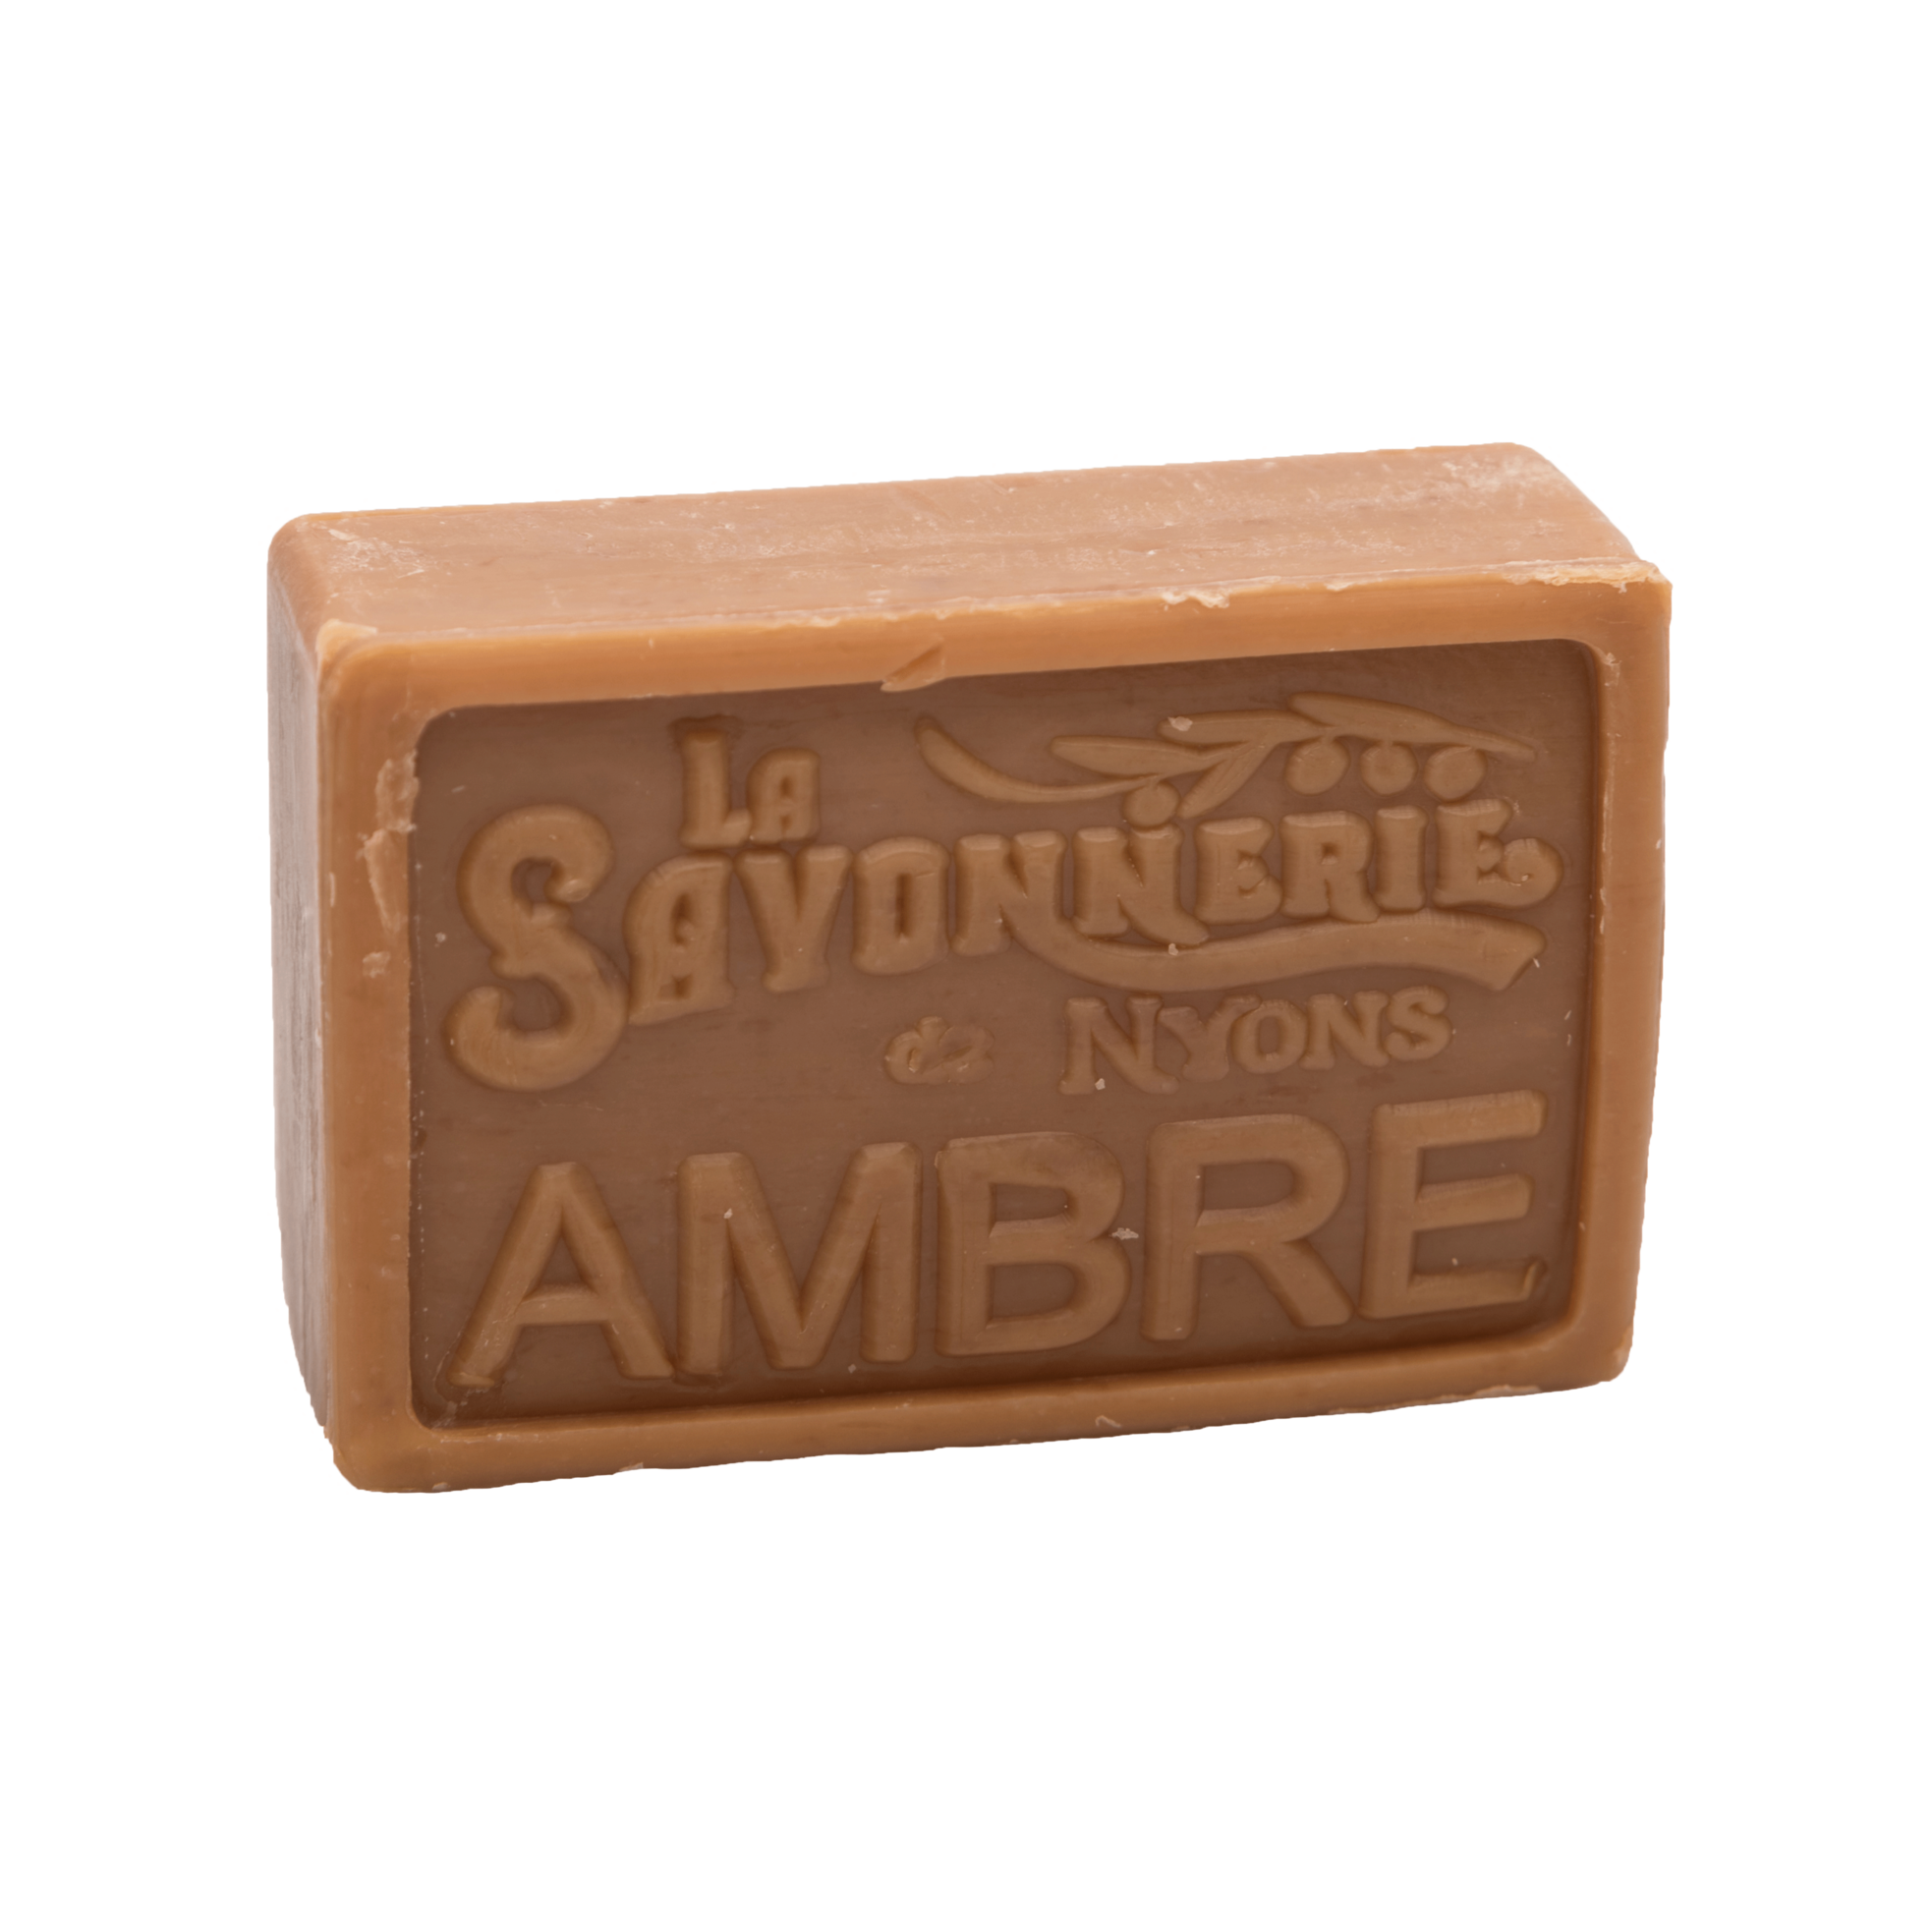 Brown bar of soap that reads La Savonnerie de Nyons Ambre.